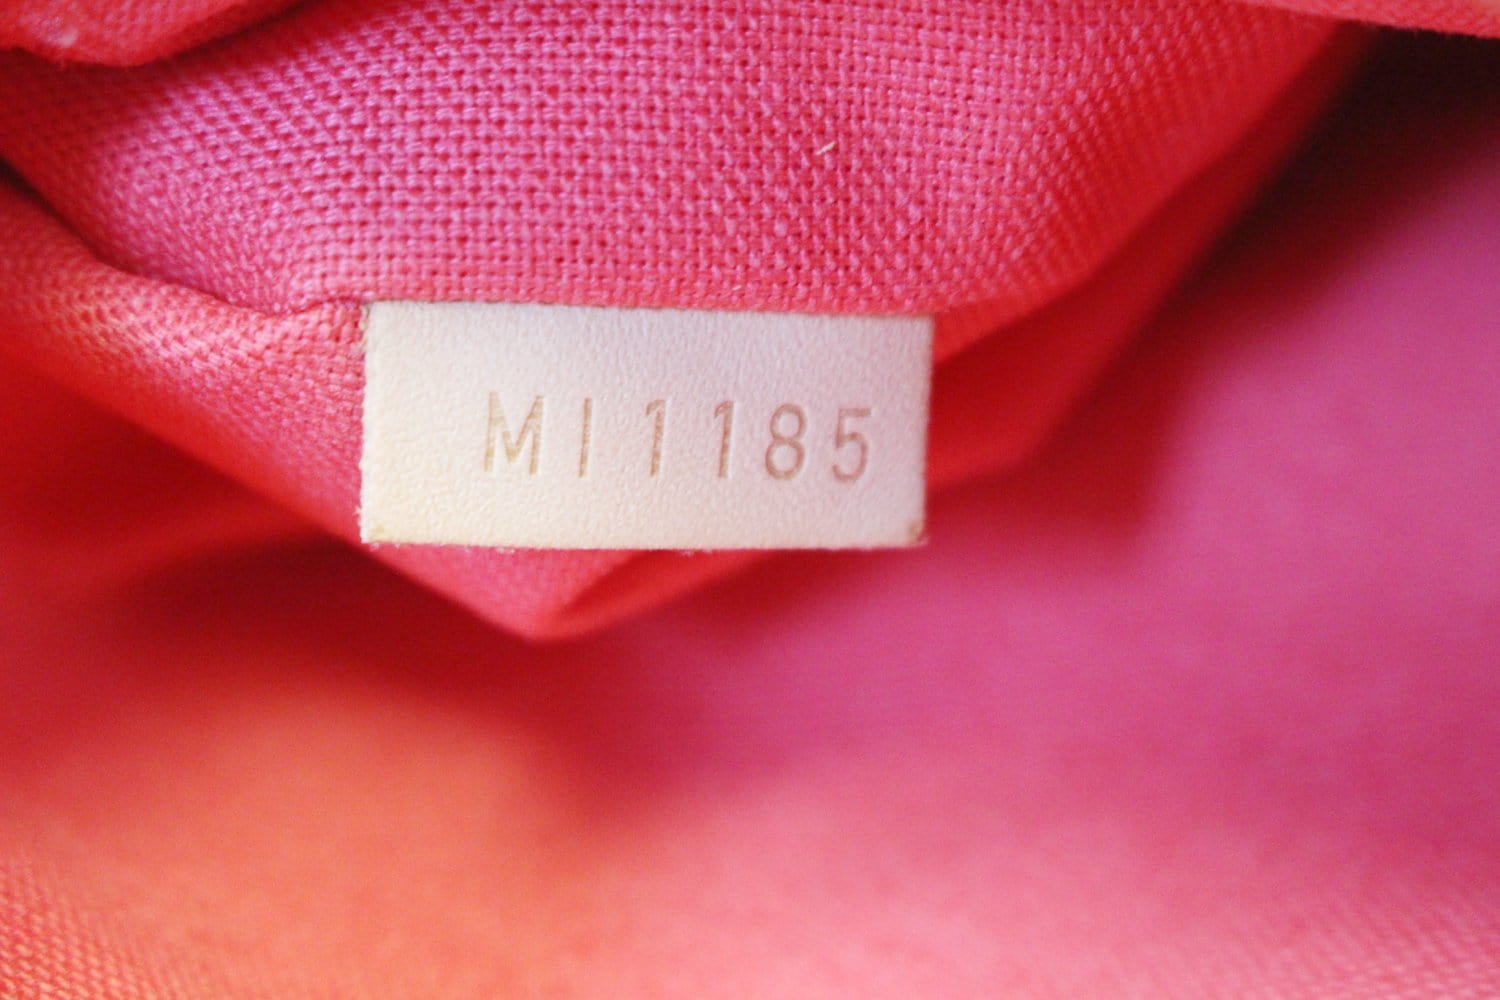 LOUIS VUITTON Delightful MM NM Damier Azur Pink Hobo Shoulder Bag